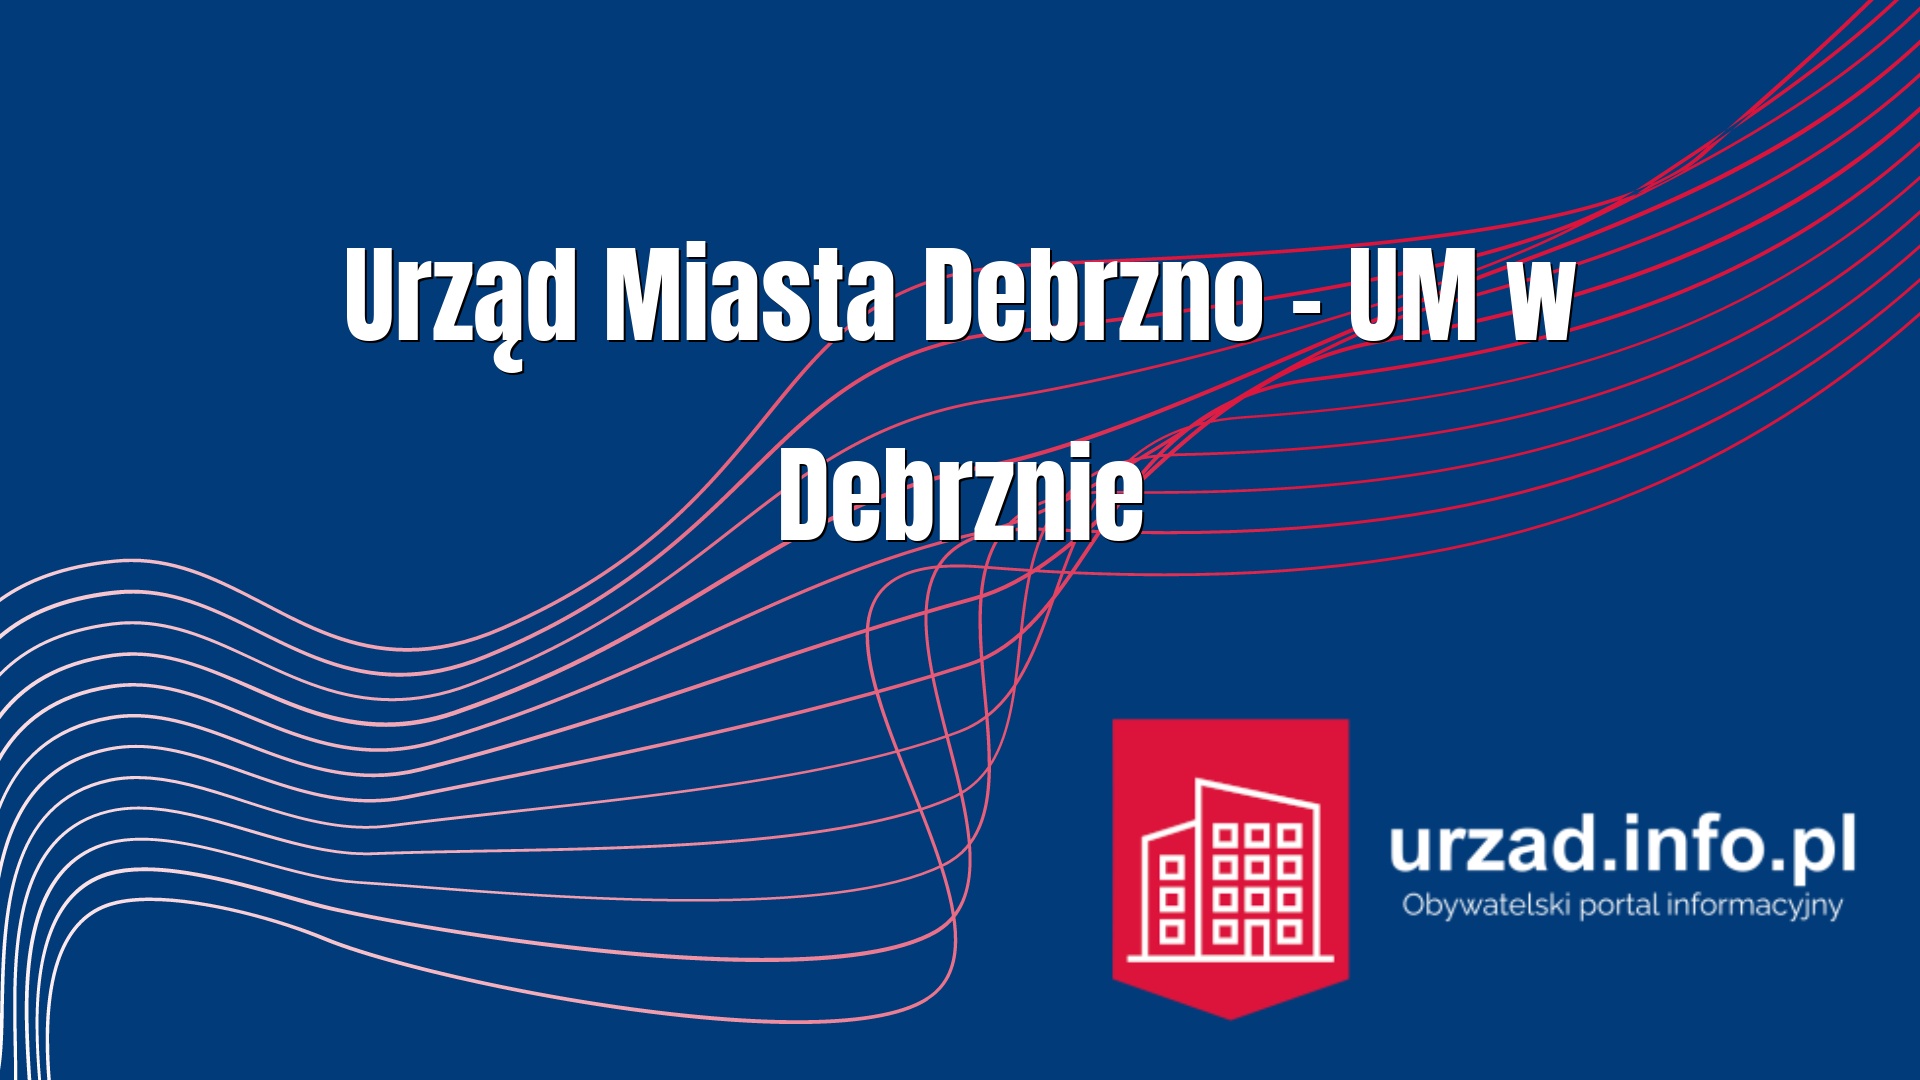 Urząd Miasta Debrzno – UM w Debrznie